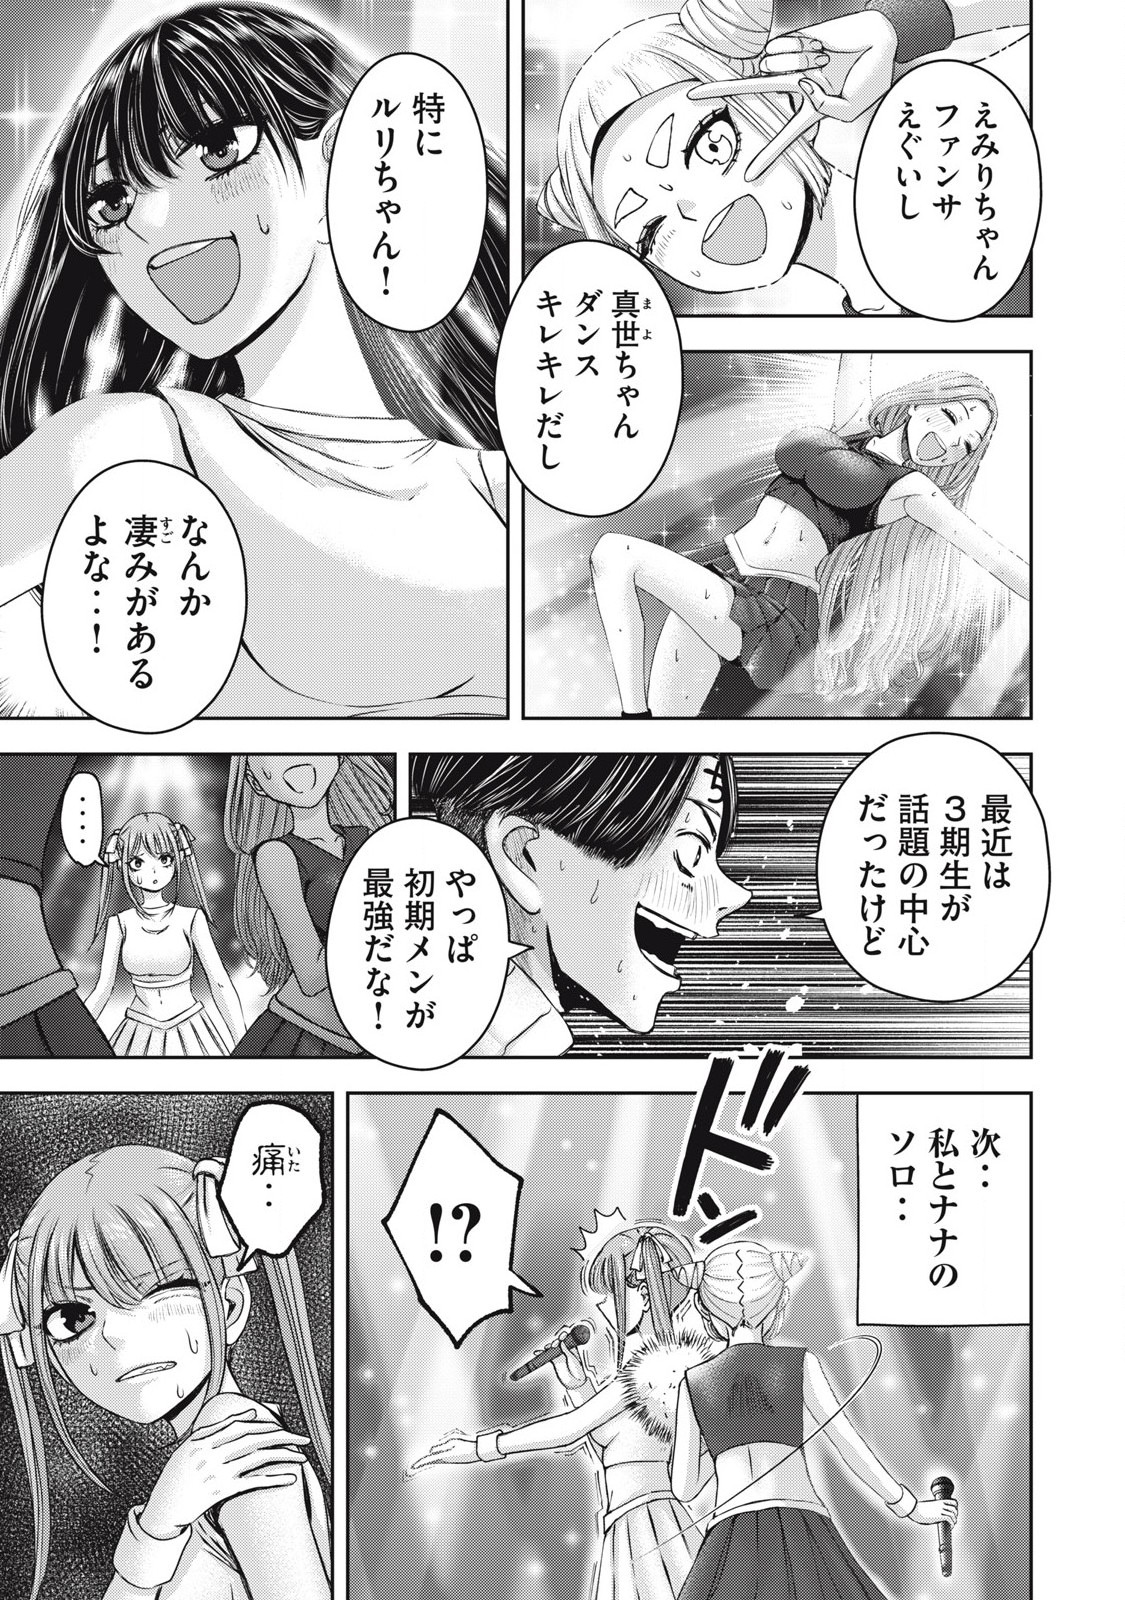 Watashi no Arika - Chapter 58 - Page 3